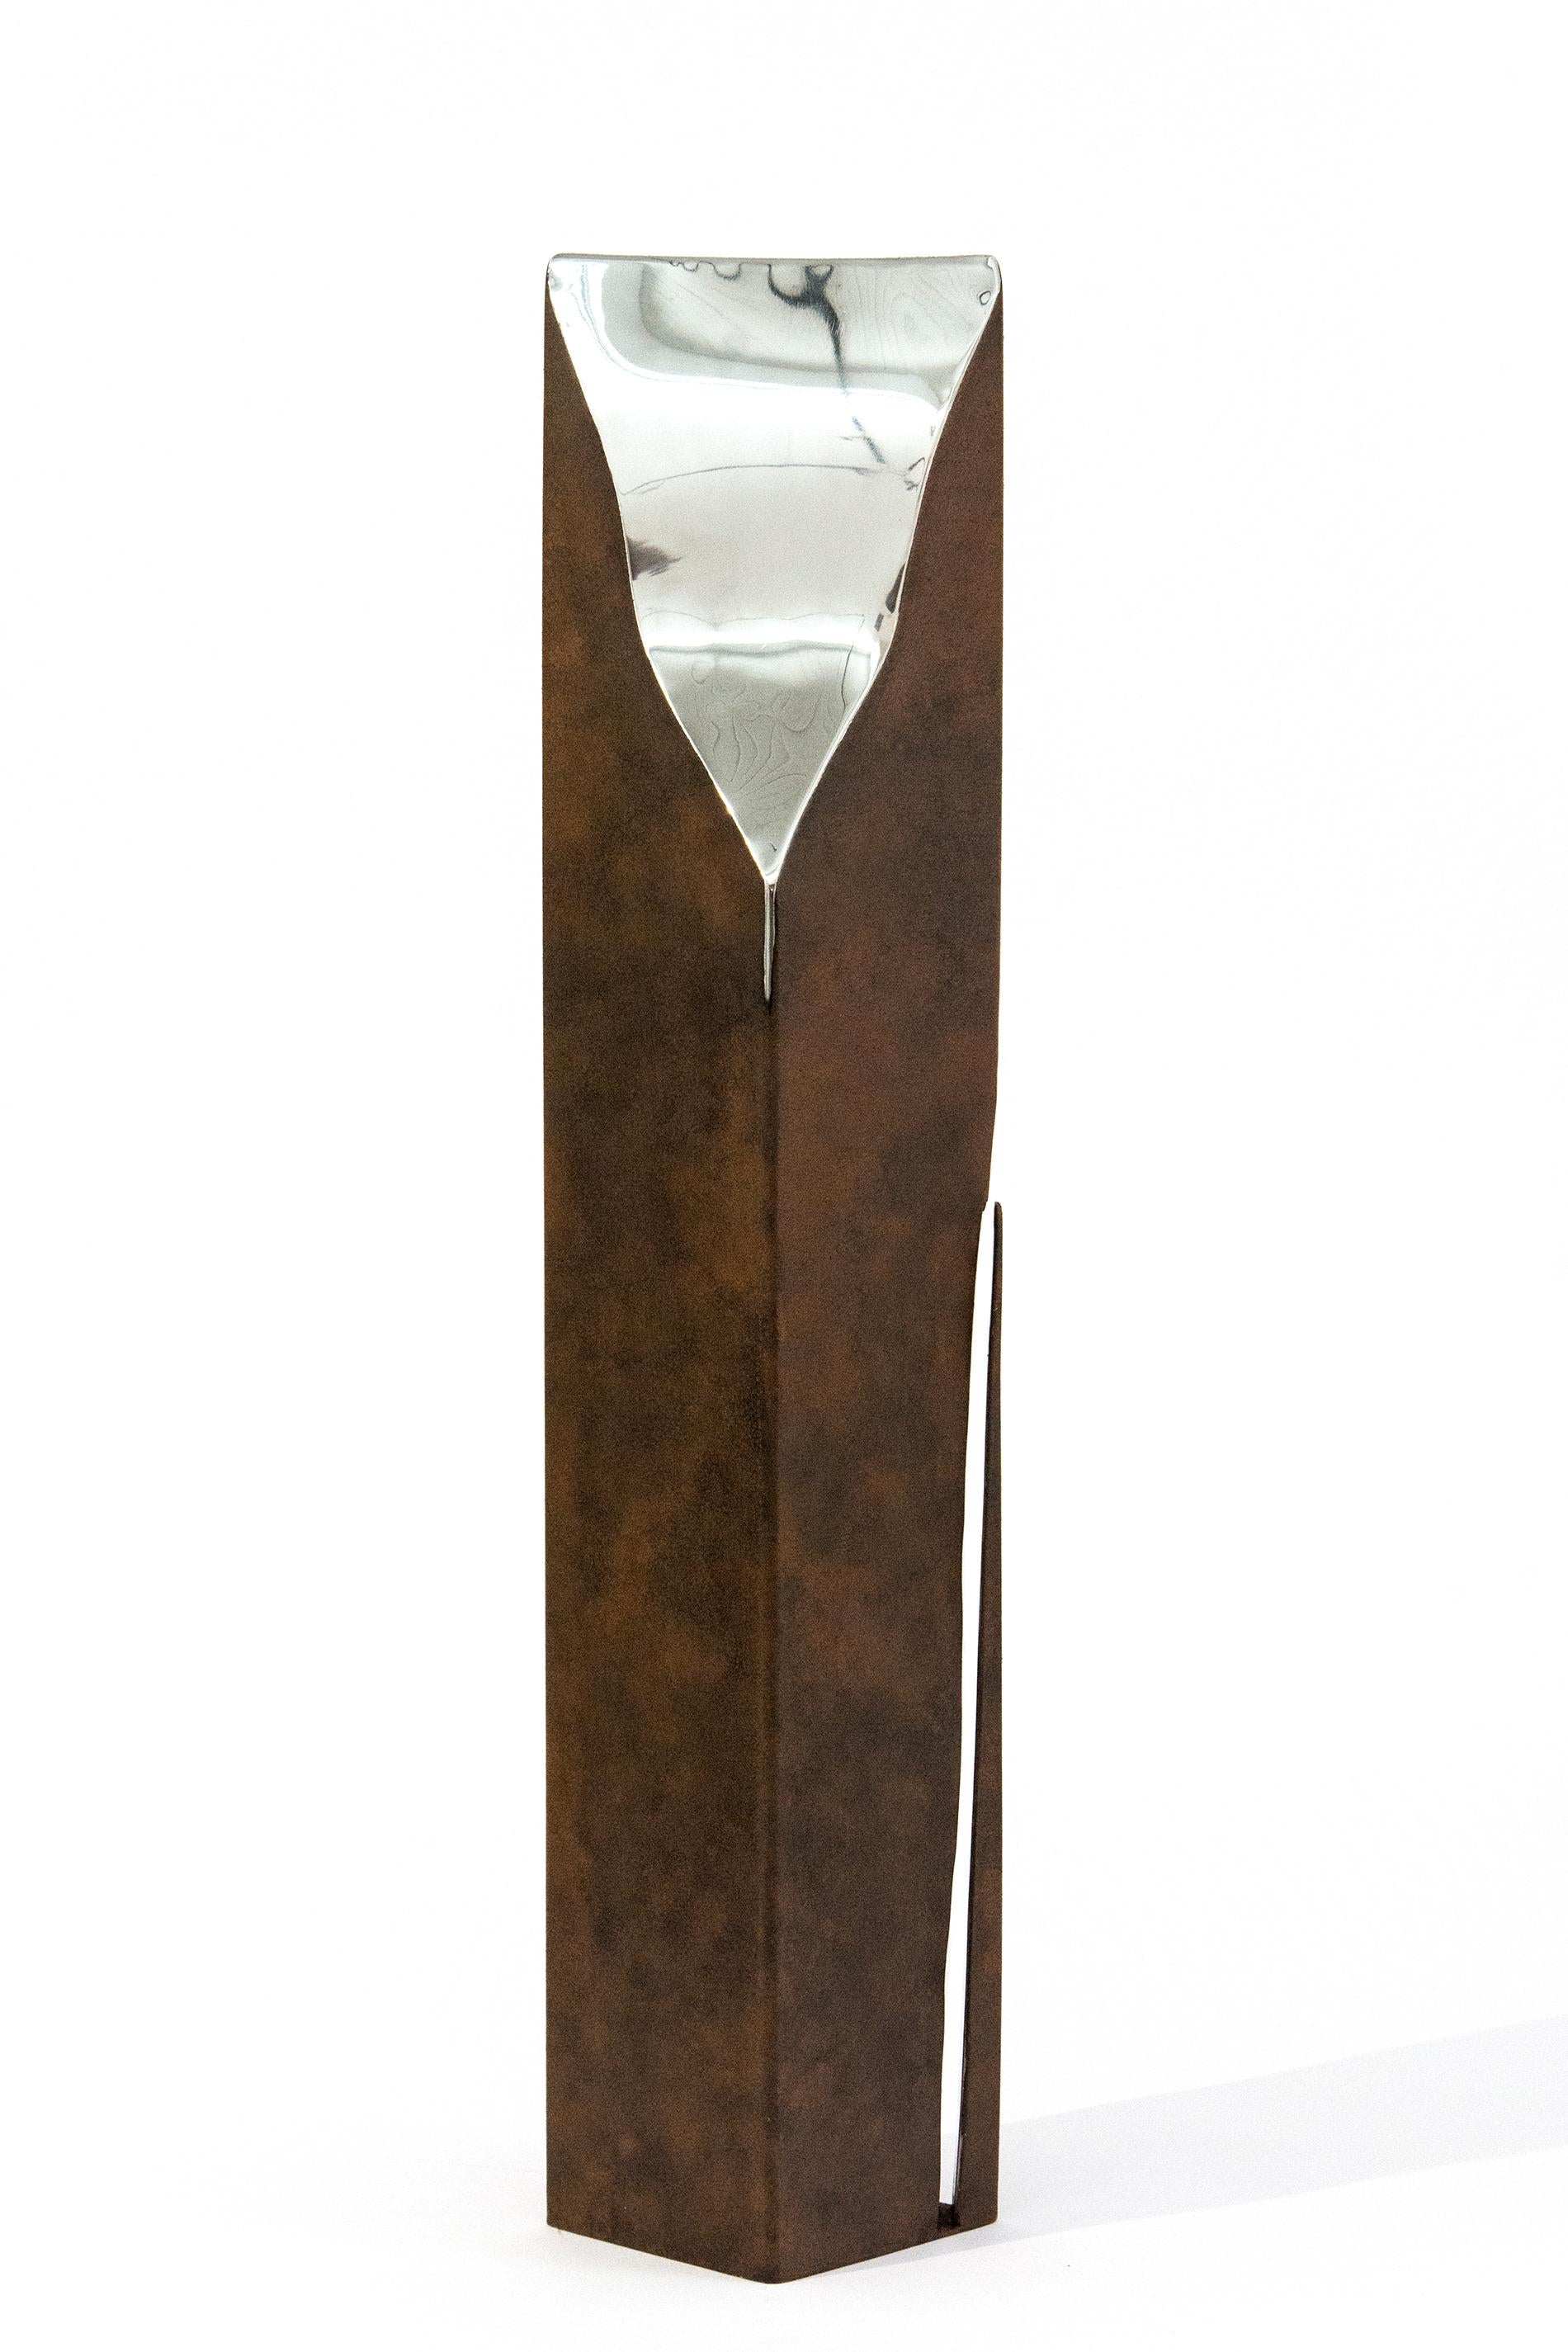 Athabasca Rust 1/10 - haute, moderne, géométrique, contemporaine, sculpture en acier - Sculpture de Philippe Pallafray